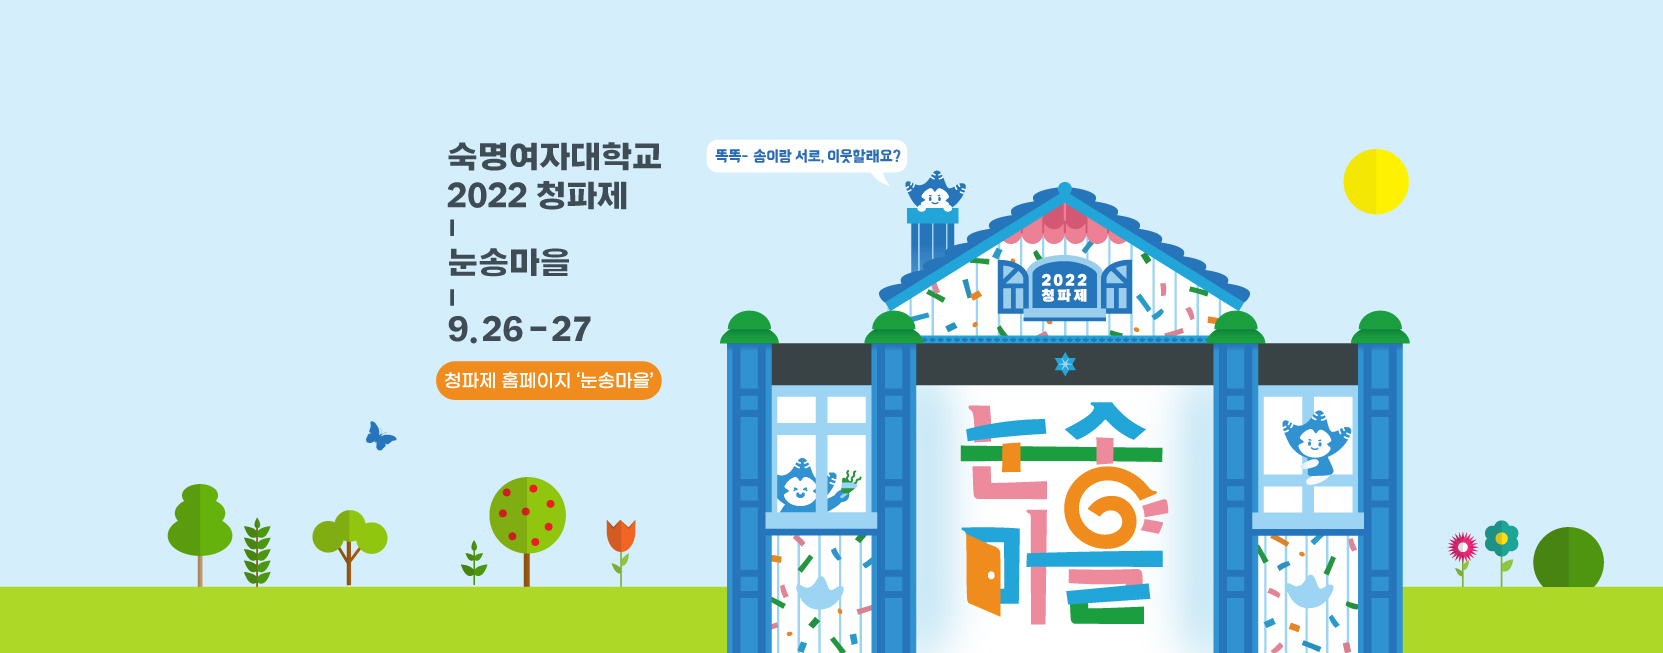 2022 청파제 '눈송마을'
2022.09.26~09.27
https://www.smwu2022festival.com/